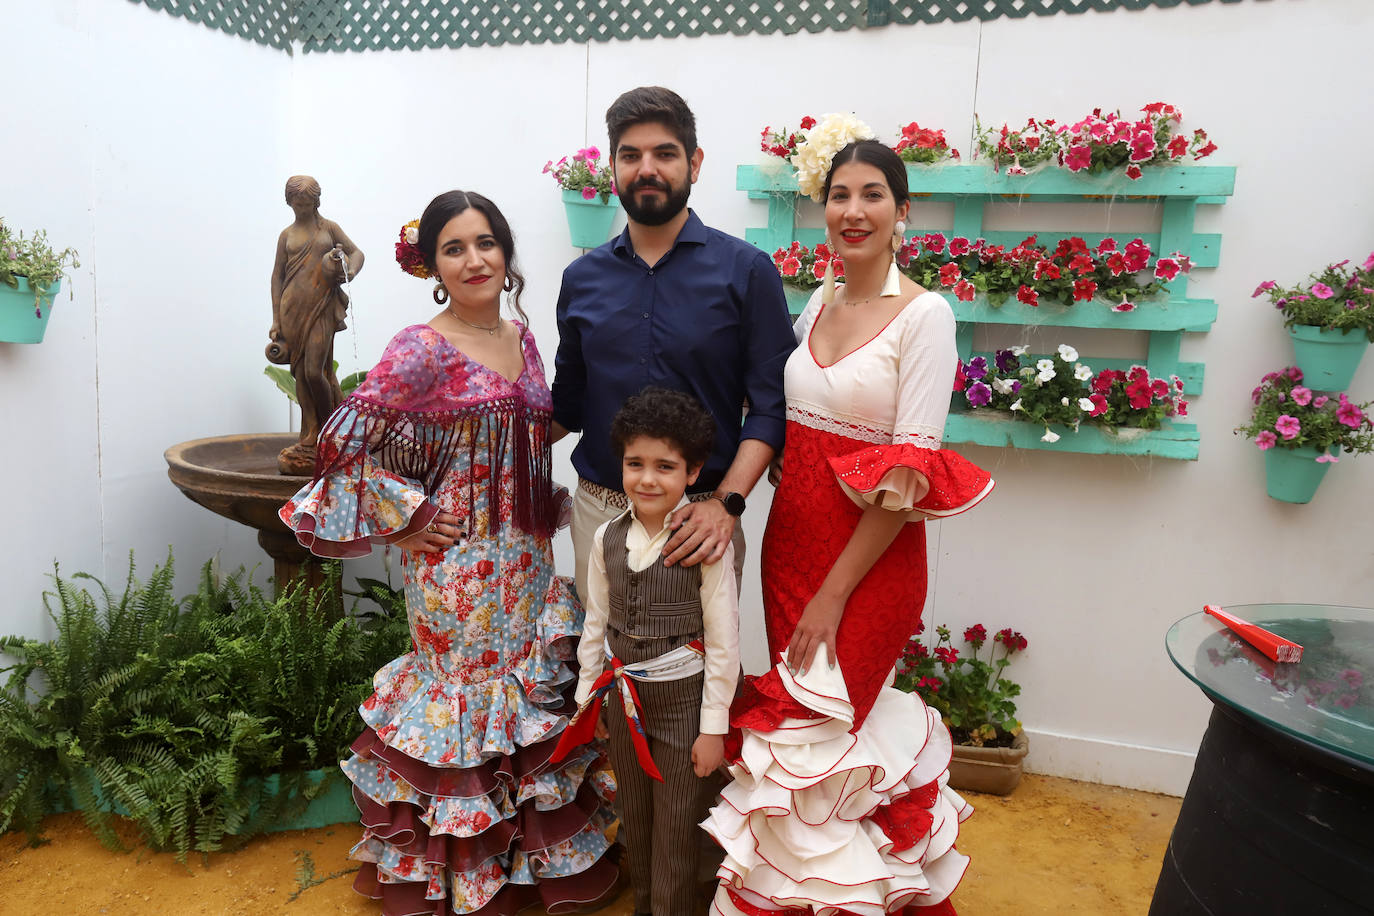 El espectacular ambiente en las casetas este domingo en la Feria de Córdoba, en imágenes